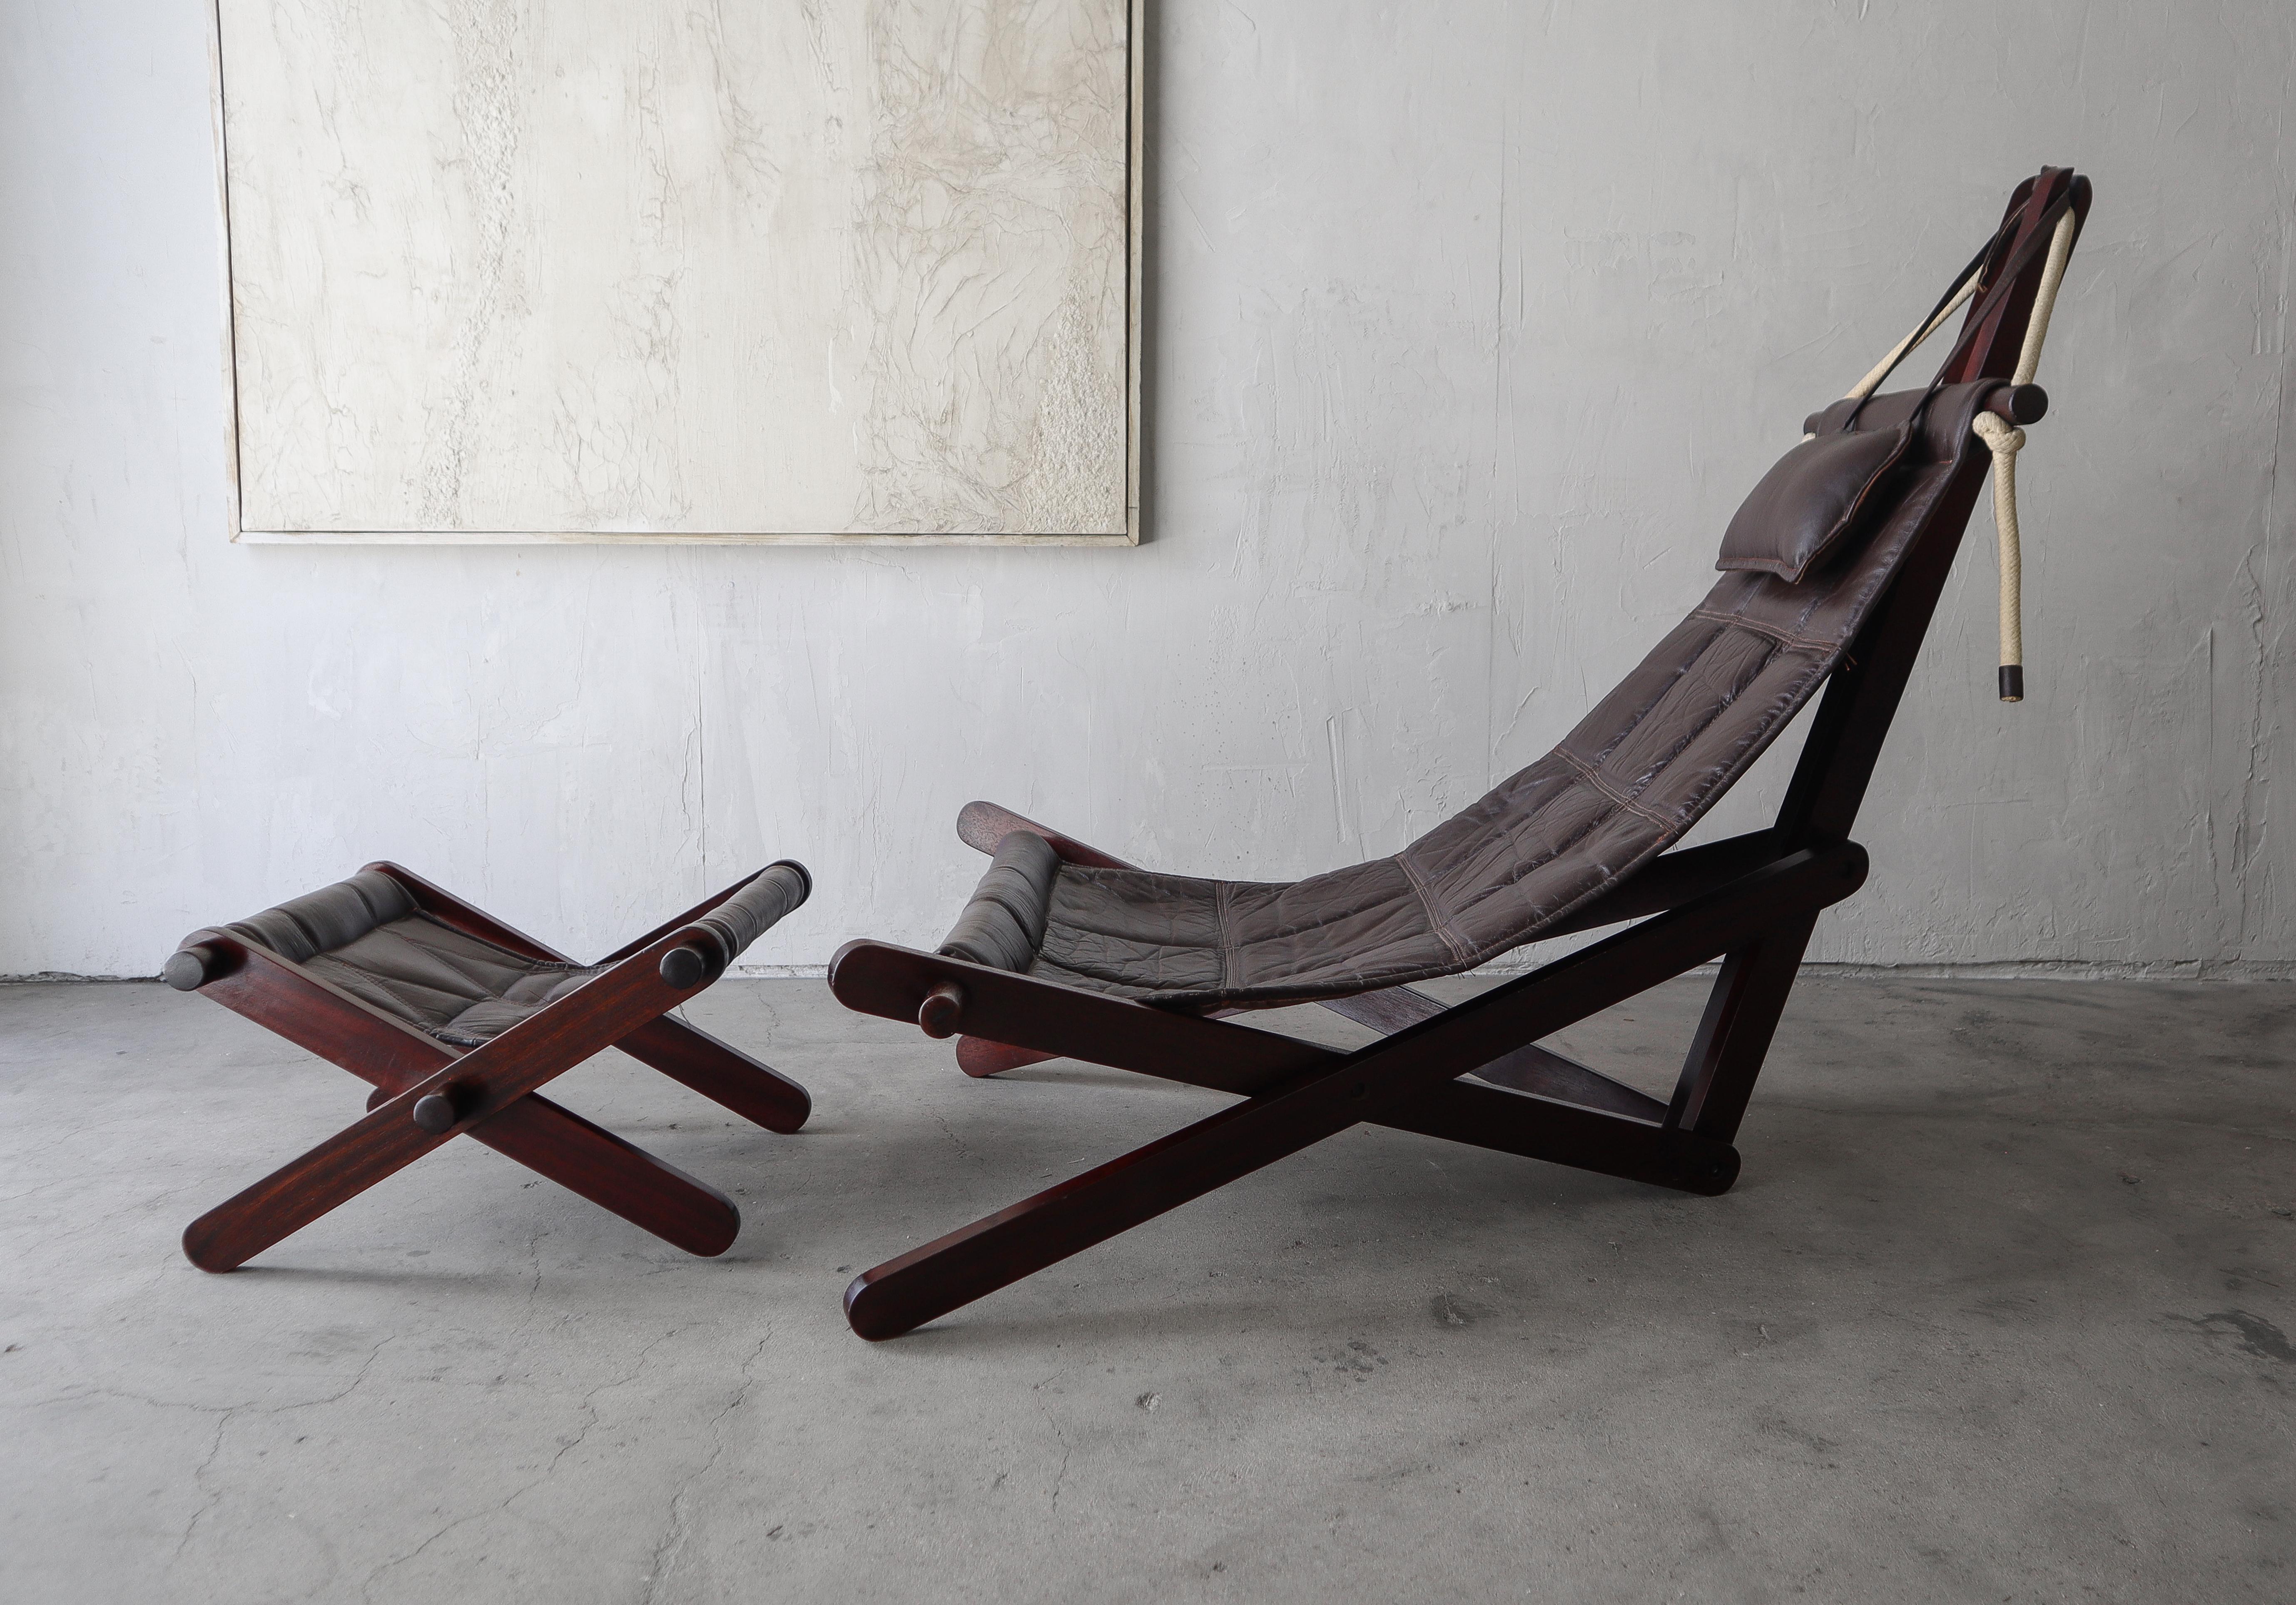 Chaise en cuir unique et ottoman rarement vu, conçus par l'architecte britannique Dominic Michaelis pour Moveis Corazza, Brésil.  La pièce est fabriquée en Jatoba (cerisier brésilien), avec des élingues en cuir et des détails en corde.

La chaise et